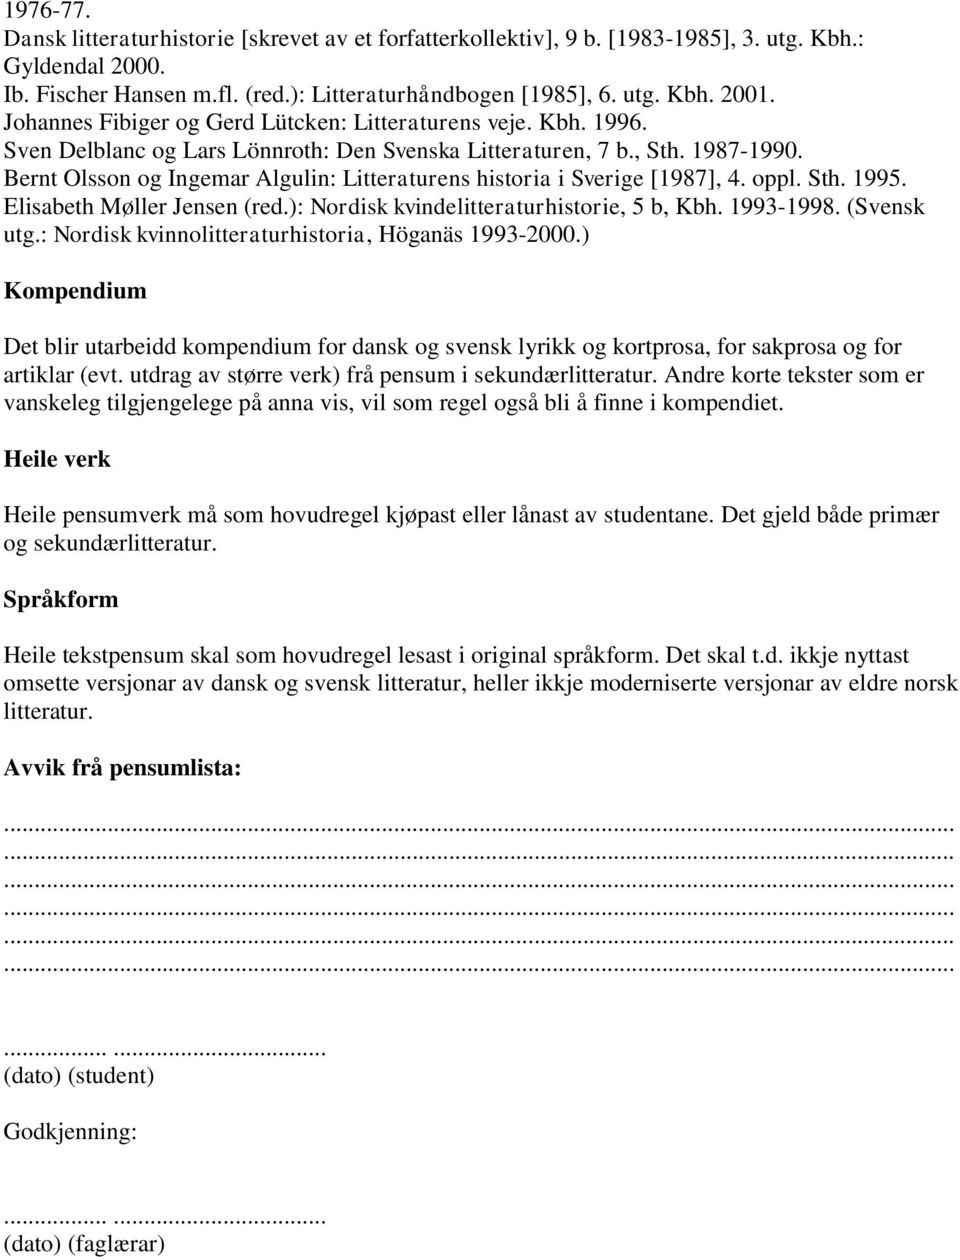 Bernt Olsson og Ingemar Algulin: Litteraturens historia i Sverige [1987], 4. oppl. Sth. 1995. Elisabeth Møller Jensen (red.): Nordisk kvindelitteraturhistorie, 5 b, Kbh. 1993-1998. (Svensk utg.